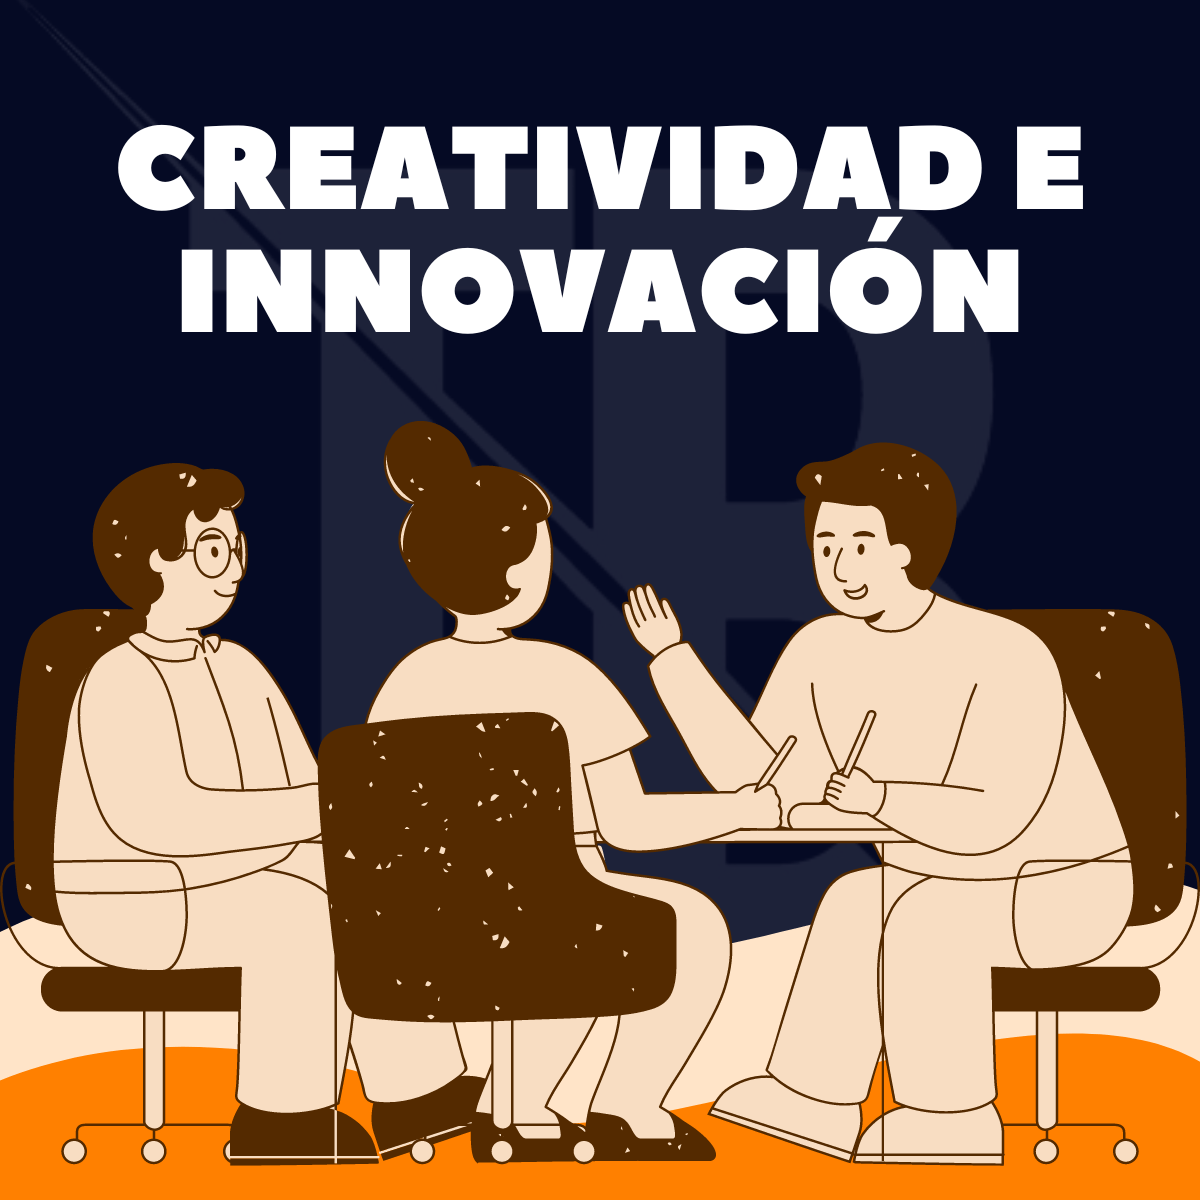 Creatividad e innovación